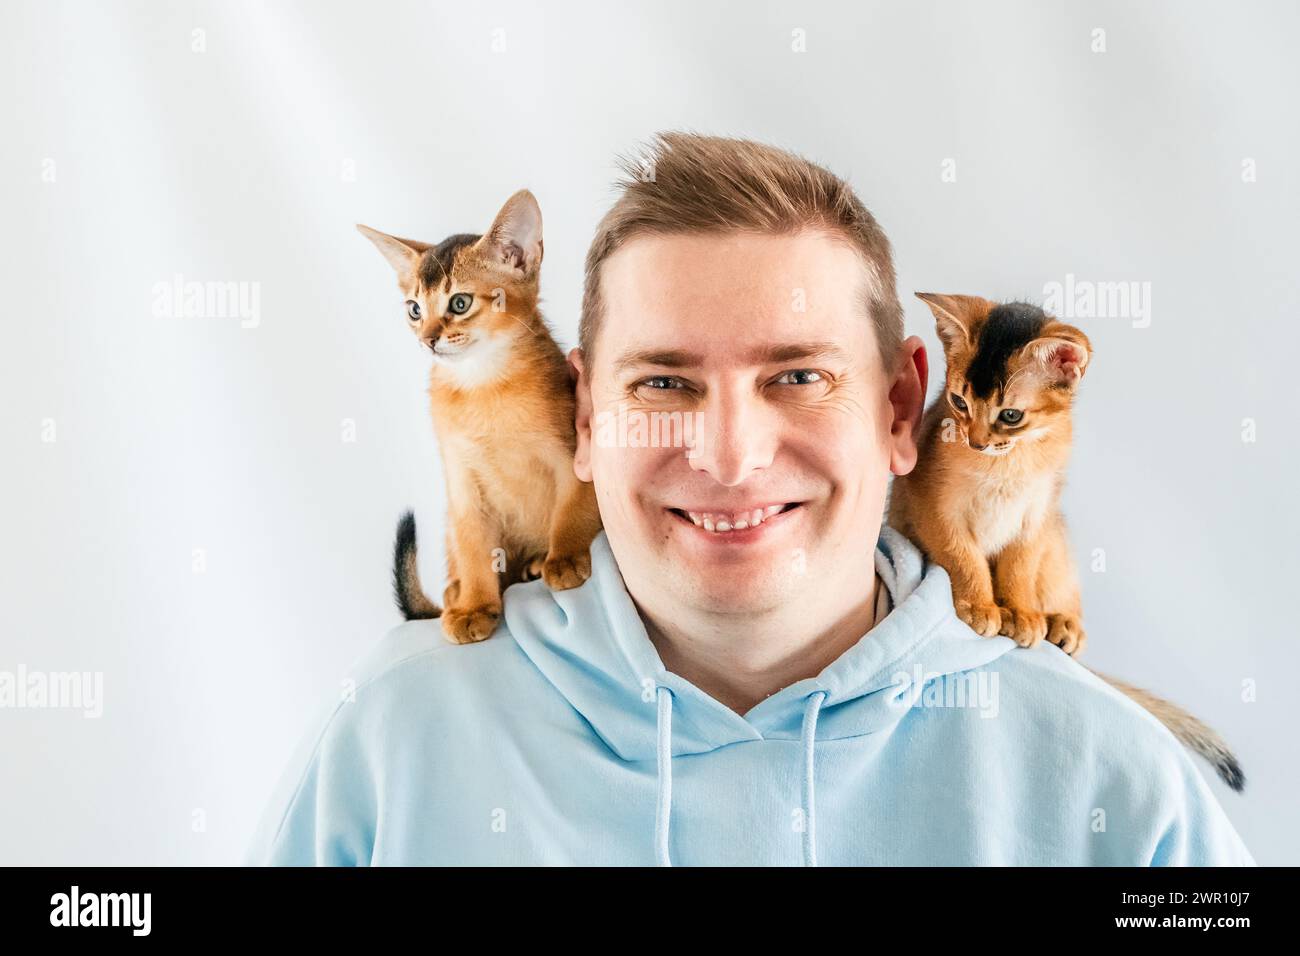 Sourire drôle homme en sweat à capuche bleu avec des chats jumeaux abyssiniens, petits chatons nouveau-nés assis sur les épaules. Fond blanc. Animaux heureux, moelleux domestique Banque D'Images